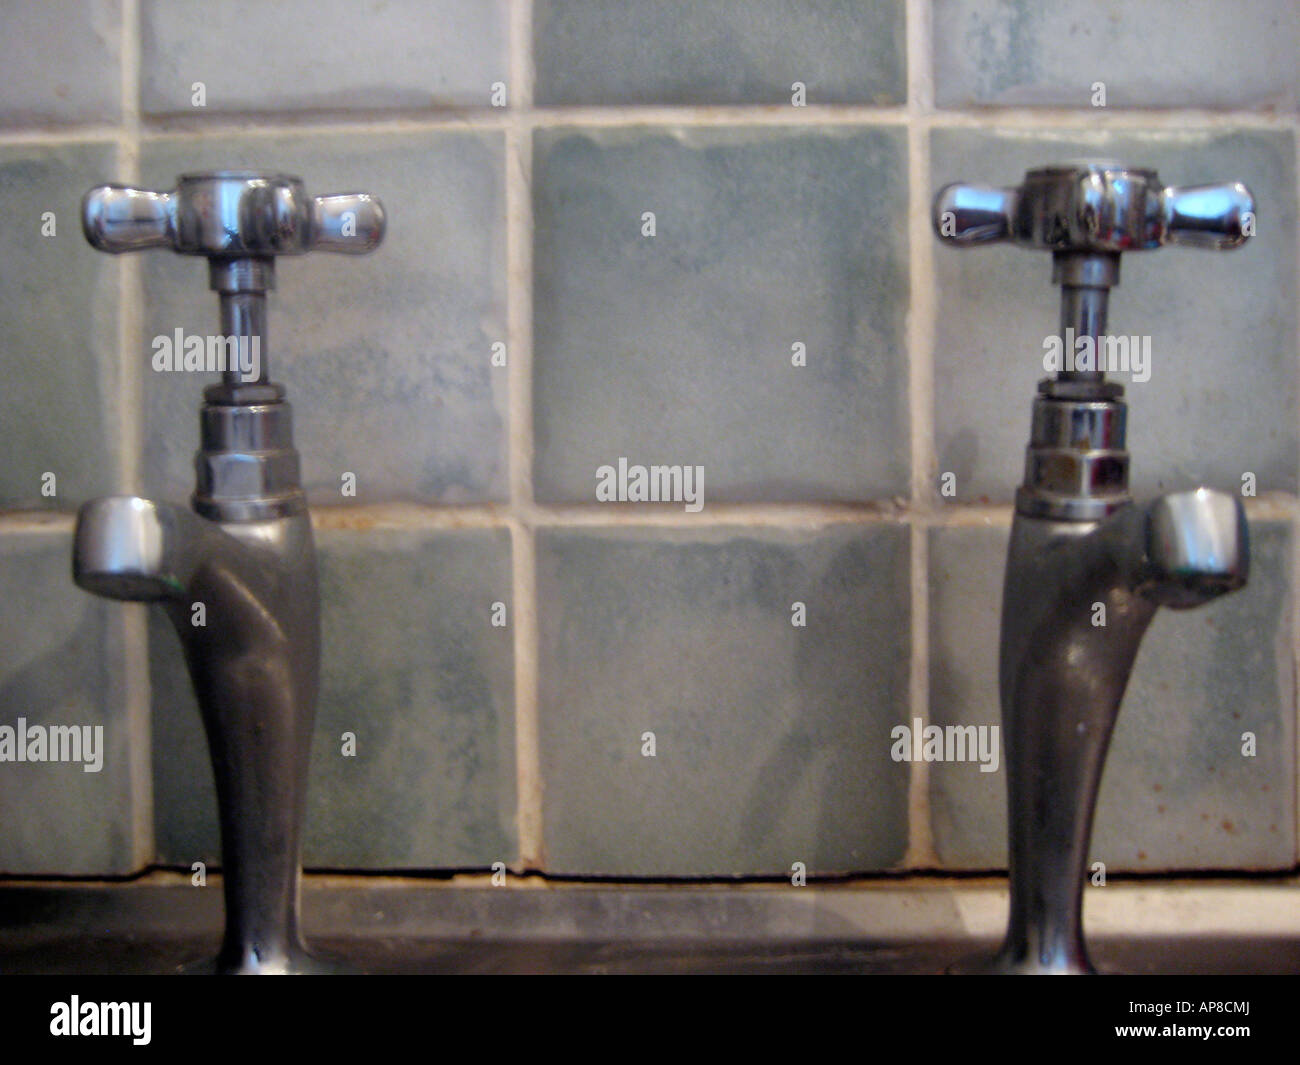 Rubinetto acqua calda bagno cucina plumber metallo plumbery home lavori home immobili lavoro prezzo di sviluppo ambiente di denaro Foto Stock